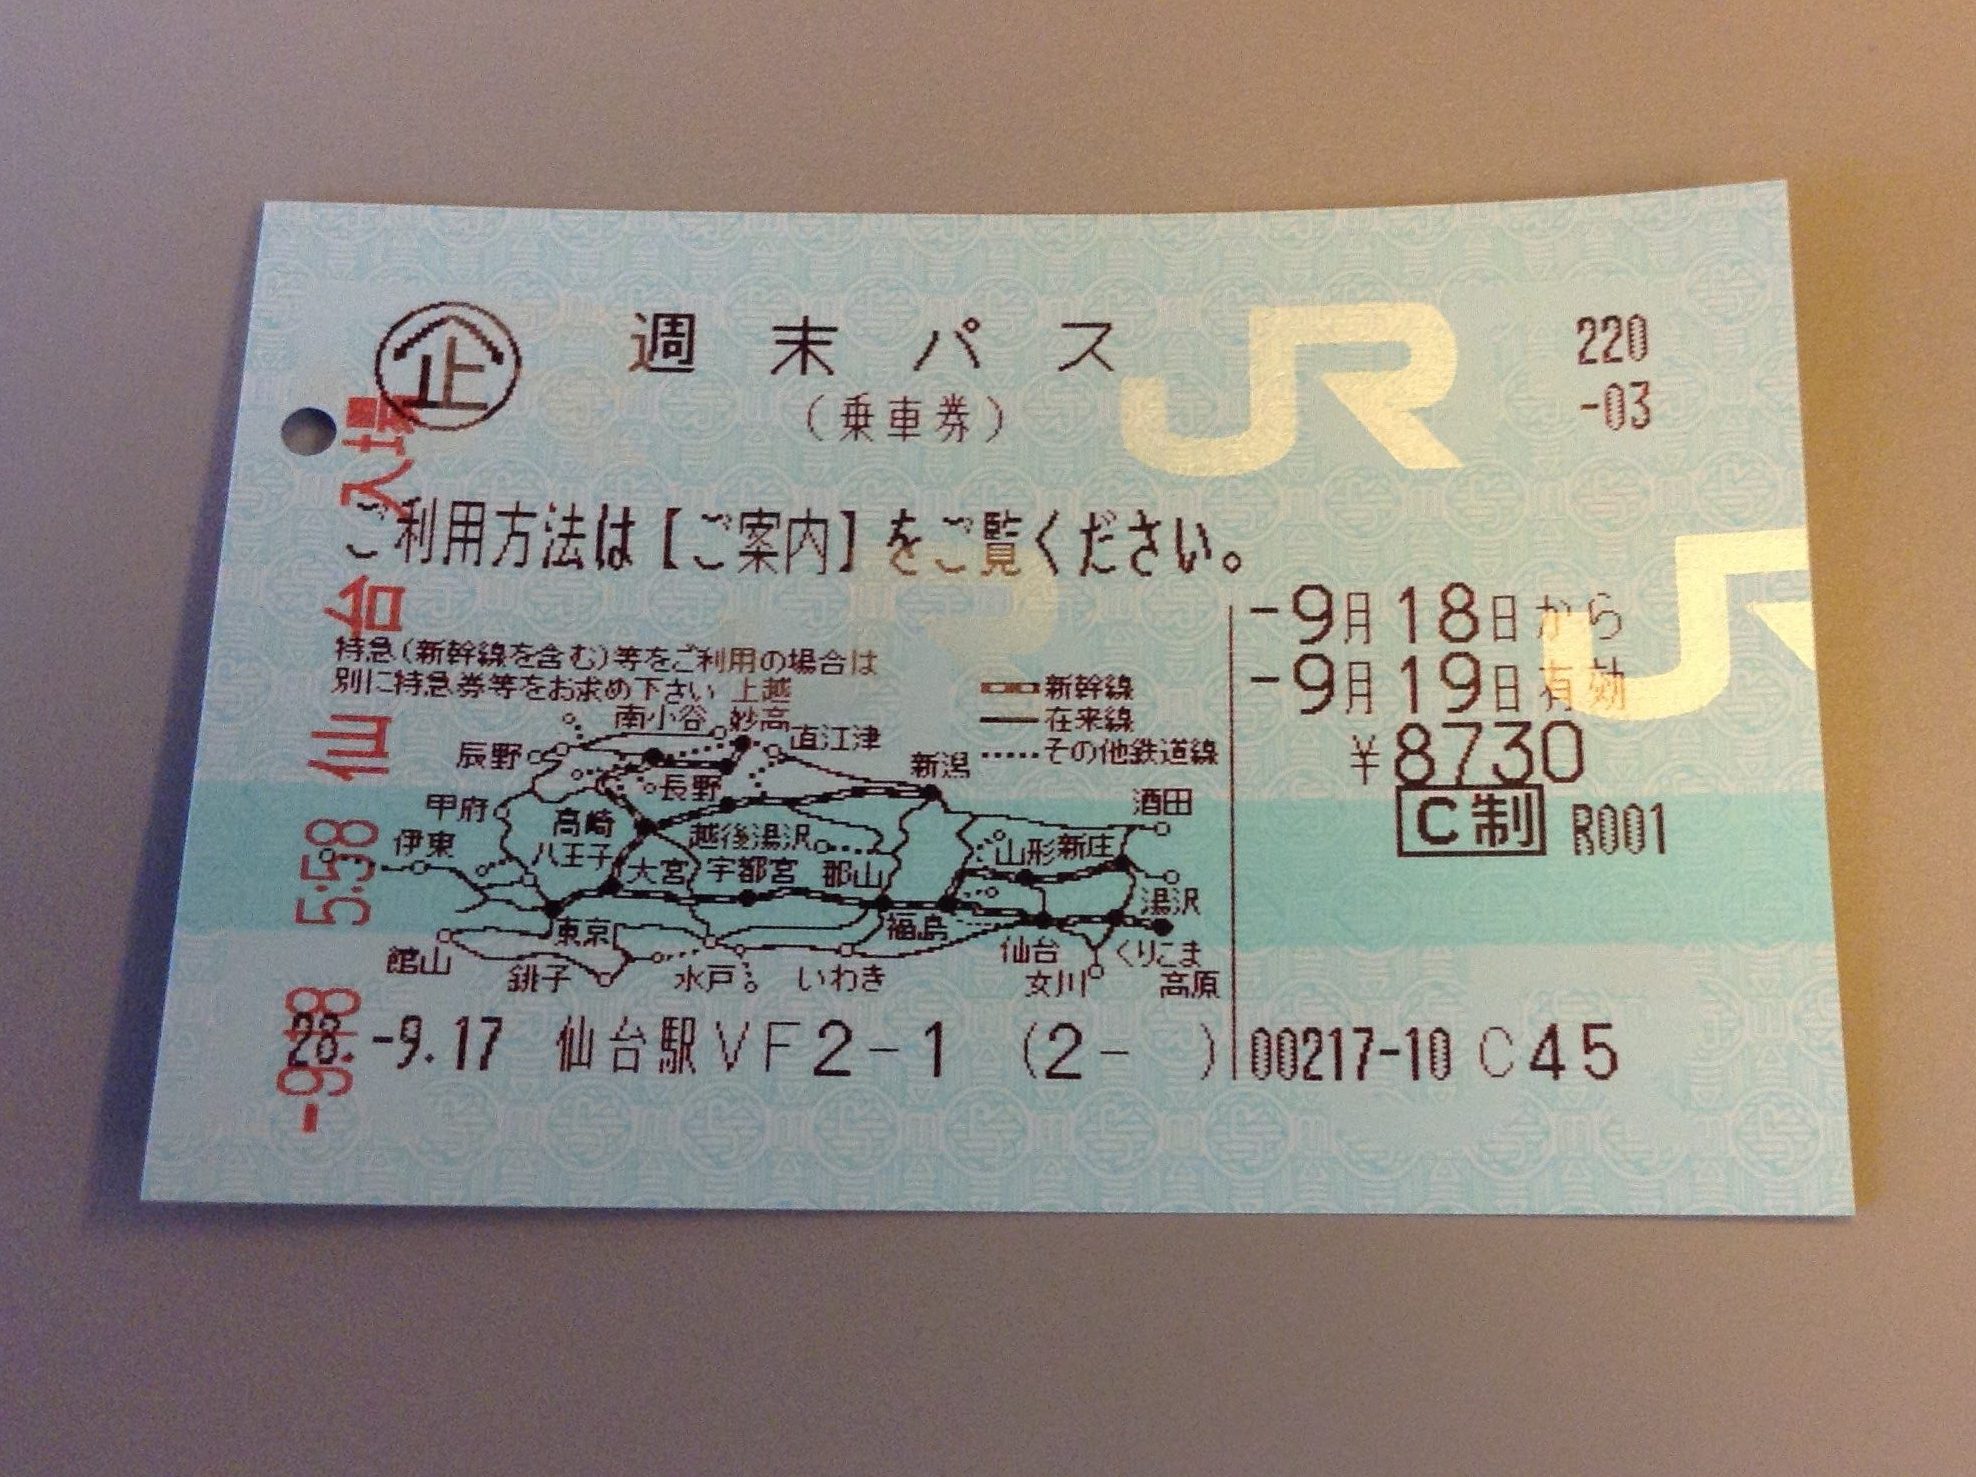 【新幹線回数券】仙台-東京 往復【指定席OK】